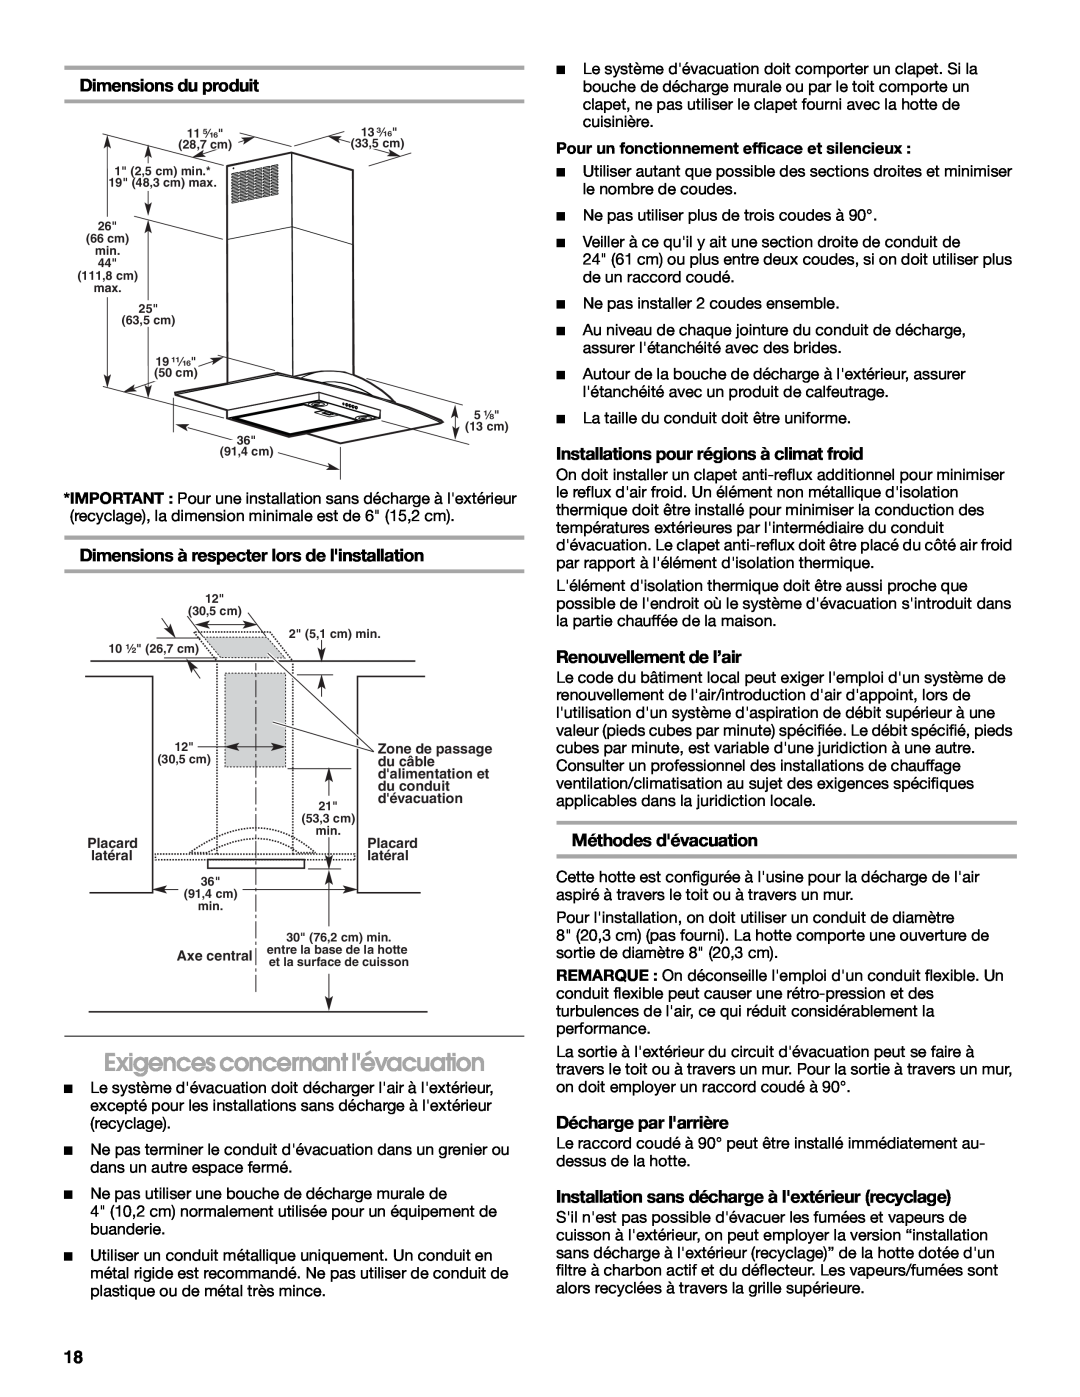 Whirlpool W10018010 Exigences concernant lévacuation, Dimensions du produit, Dimensions à respecter lors de linstallation 